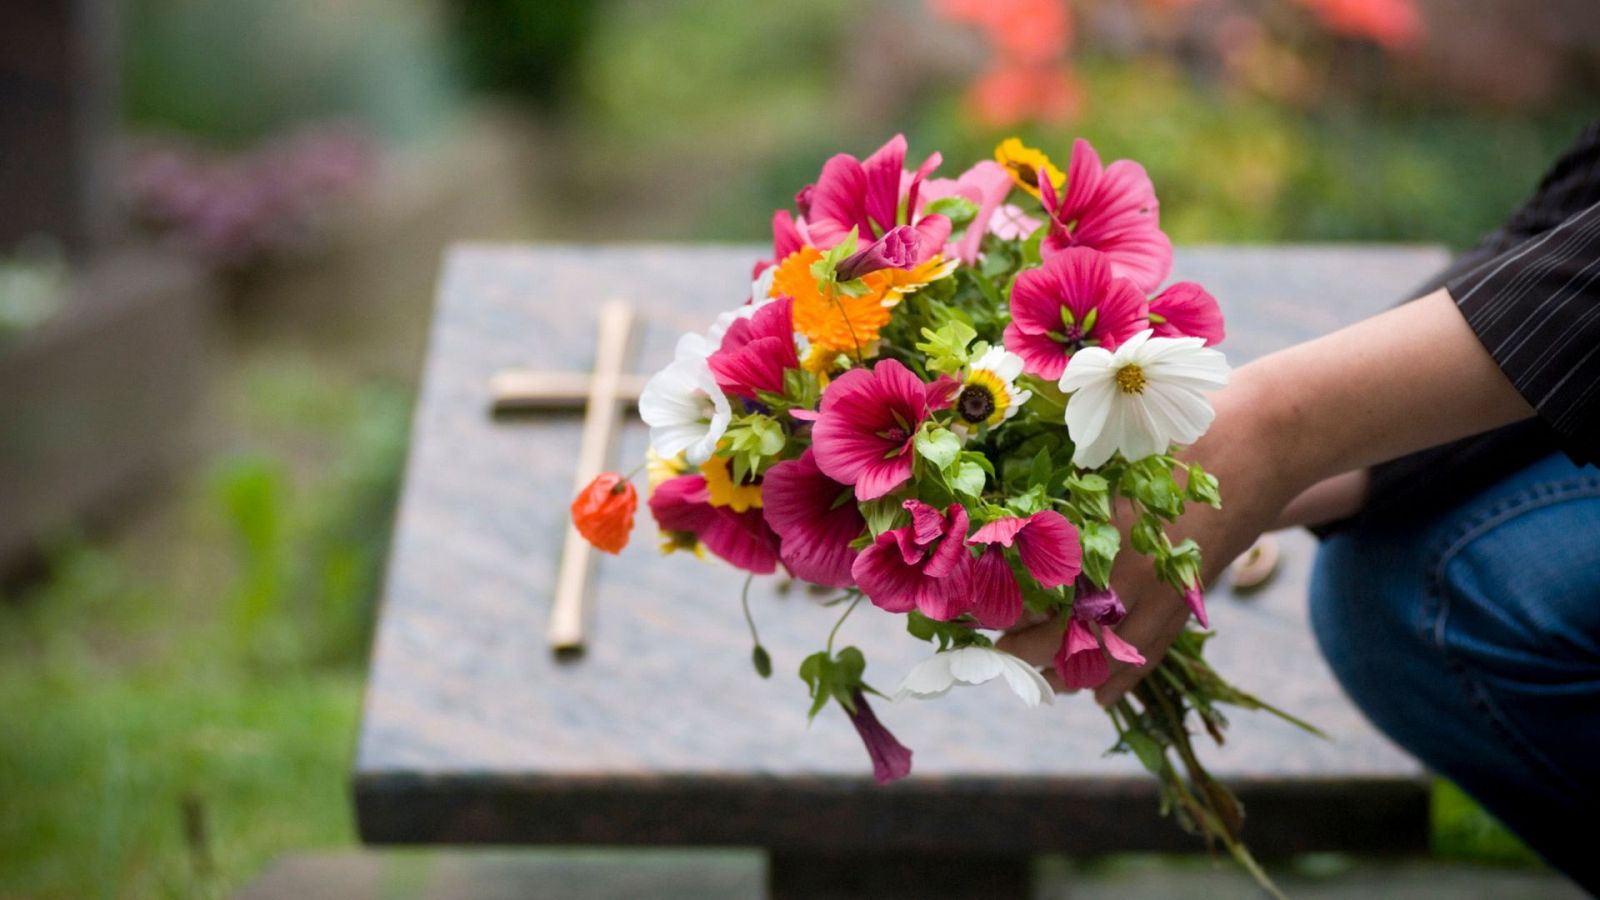 Visita al cementerio: el precio de los ramos de flores "igual al año pasado" pero "más pequeños" - Ver ahora